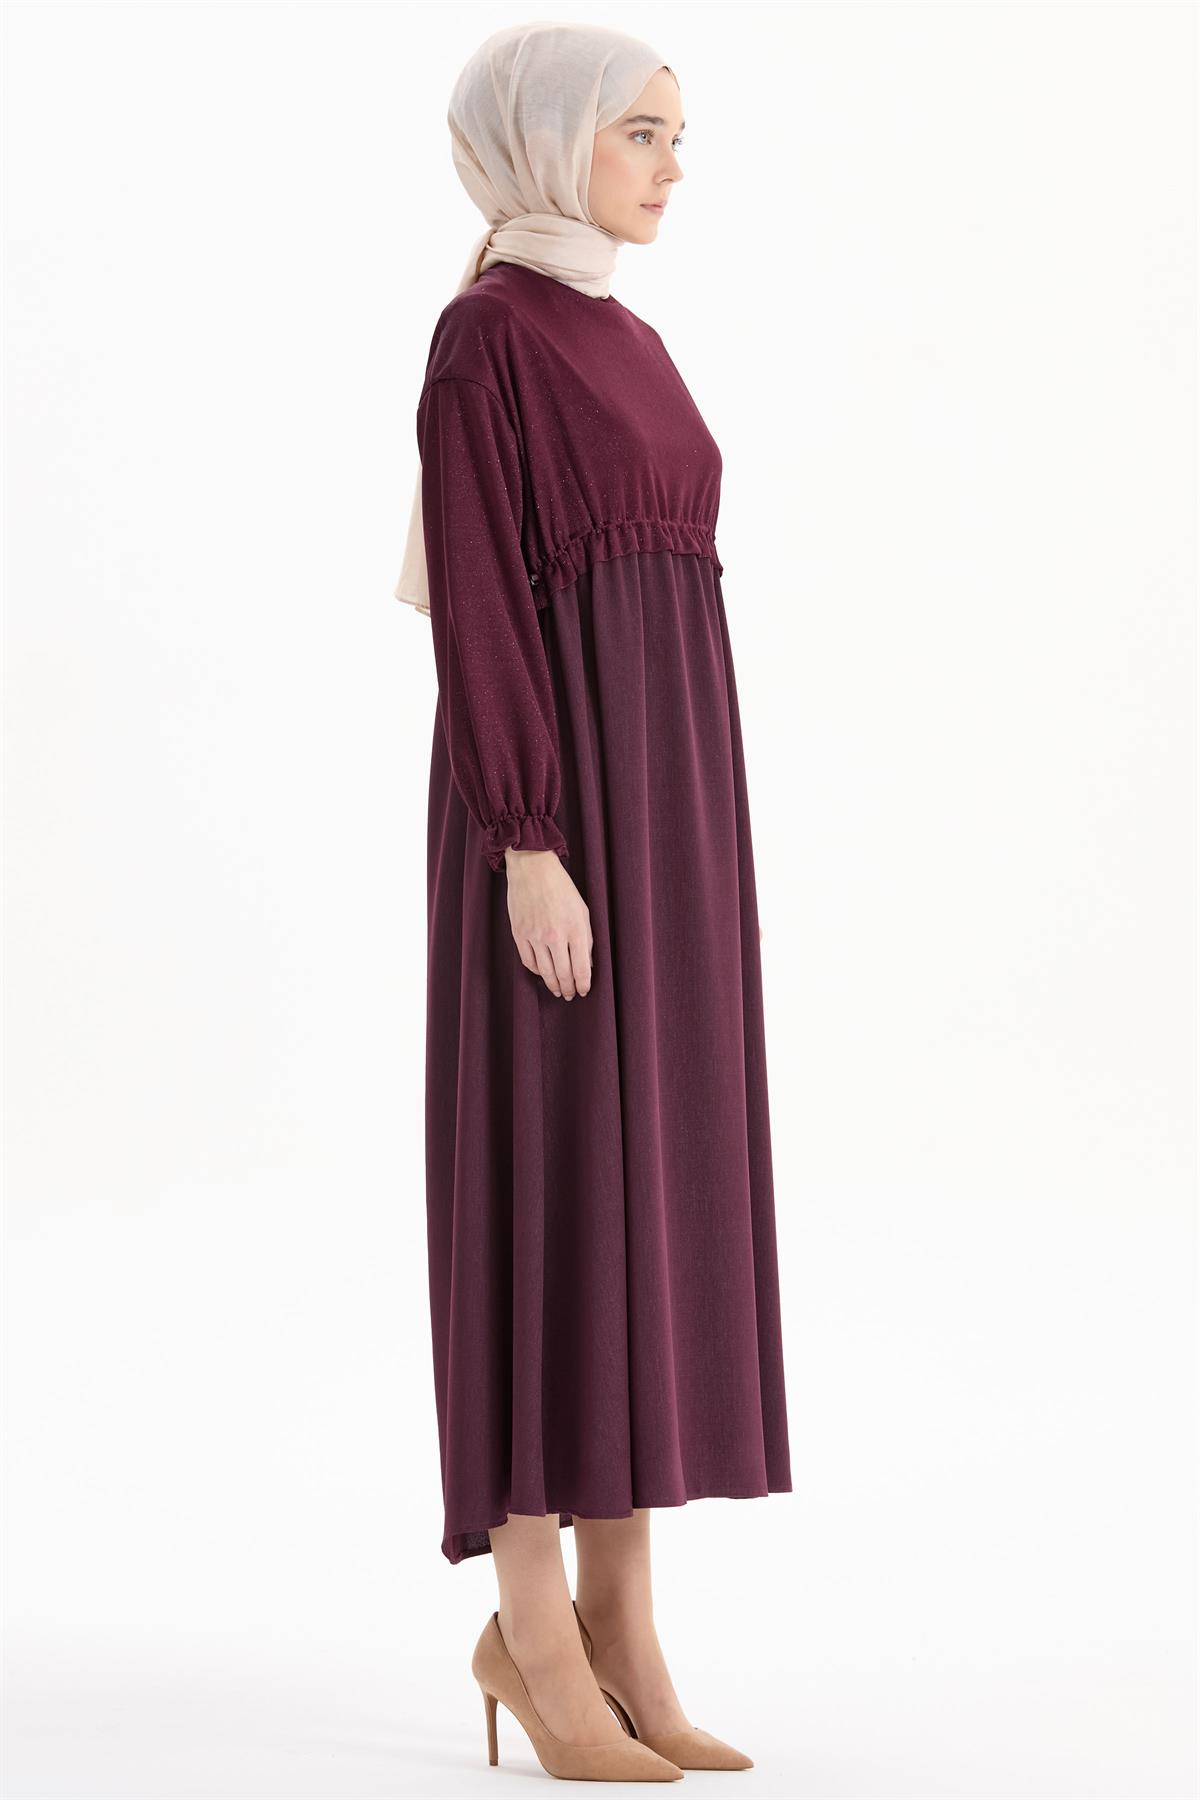 Elbise - Tuğba Elbise Modelleri | Tuğba Online